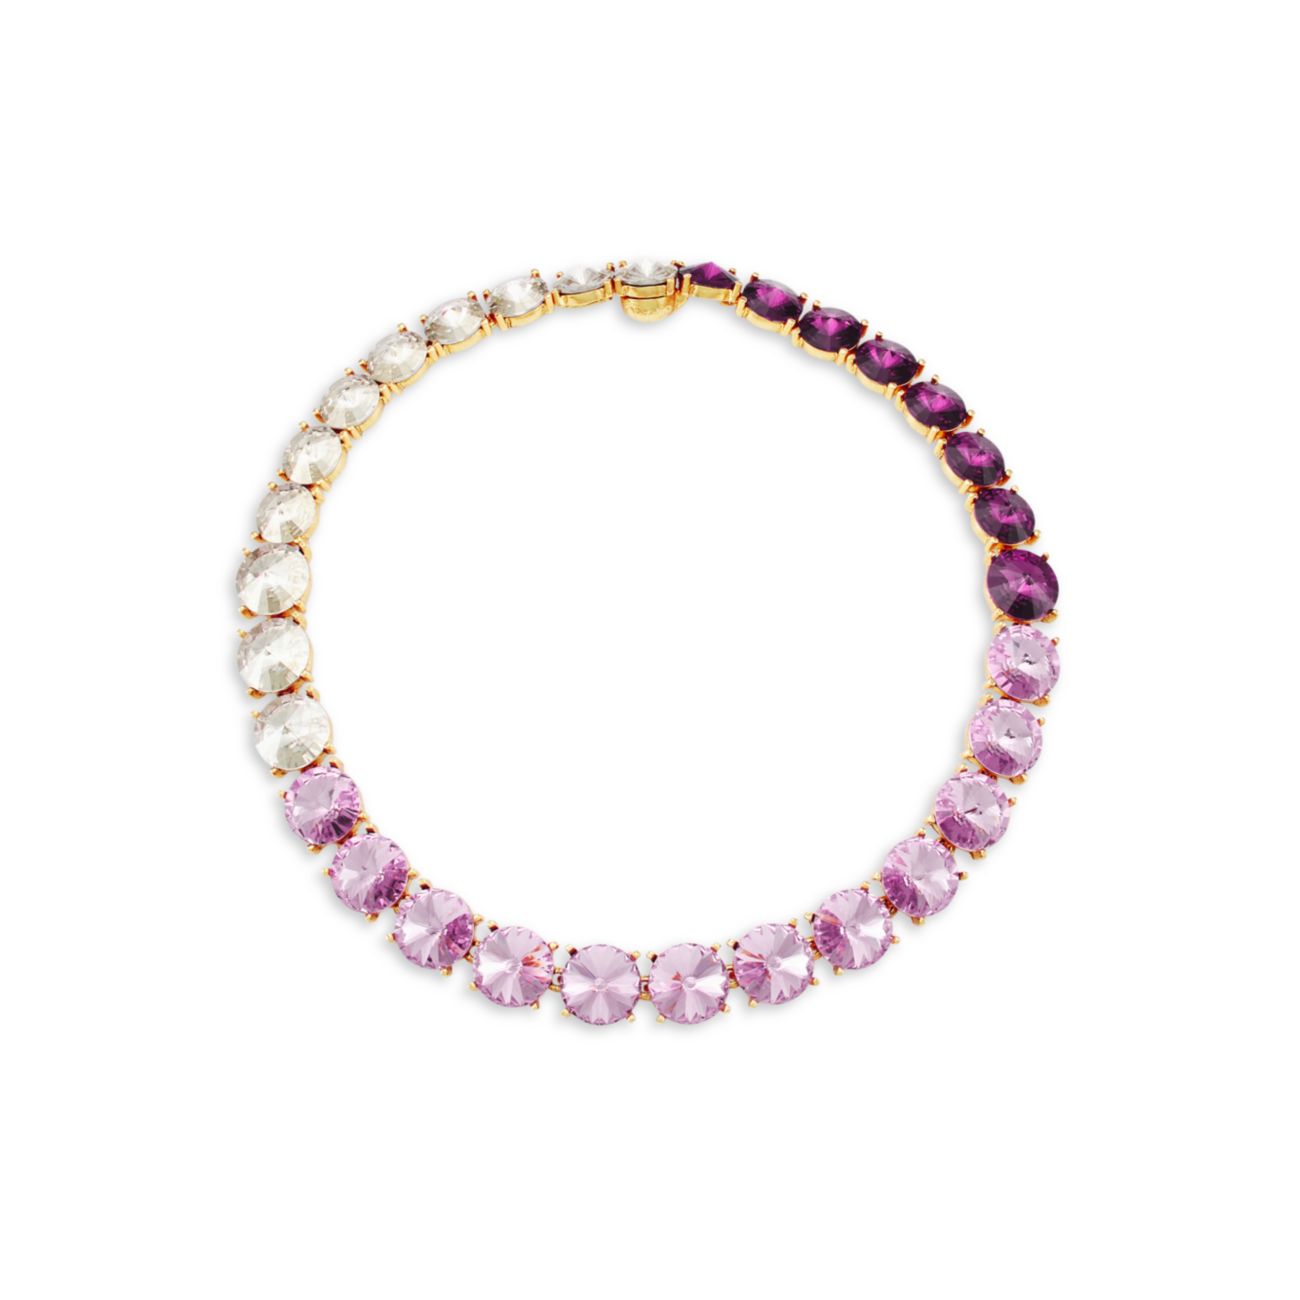 Goldtone & amp; Ожерелье с кристаллами Swarovski Oscar de la Renta